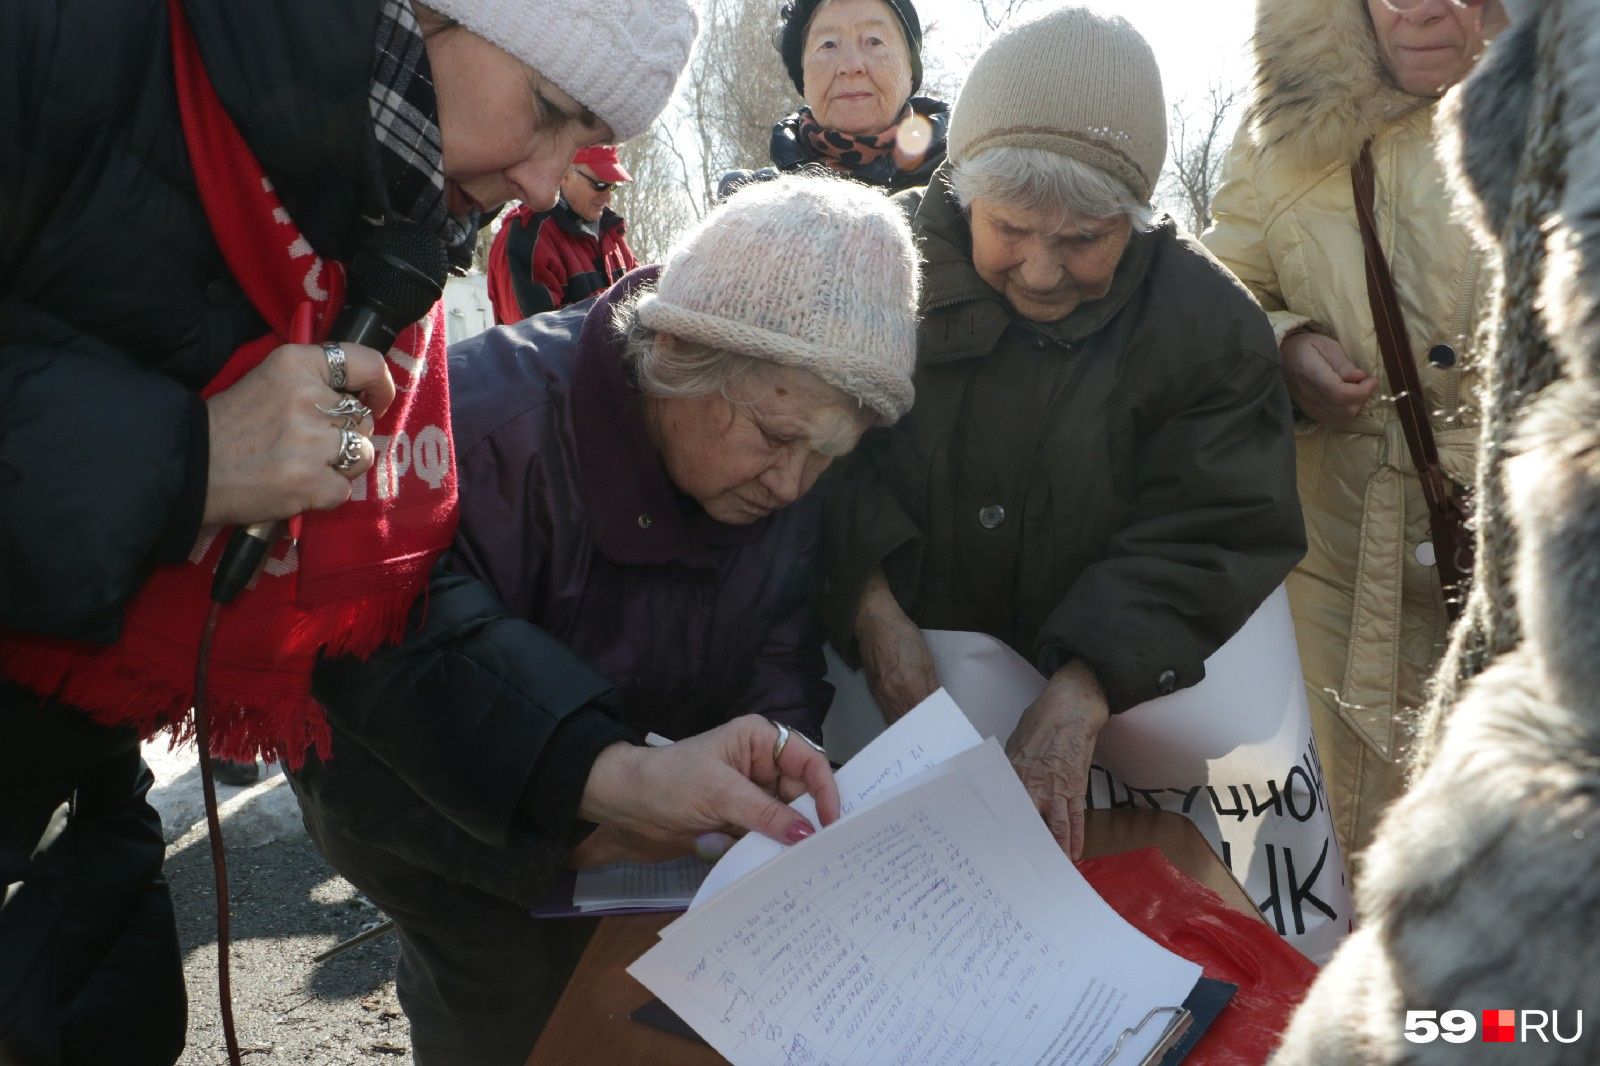 В конце митинга его участники подписали обращение в администрацию Перми. В нем они требуют еще раз обсудить изменения в маршрутную сеть города с жителями Свердловского района